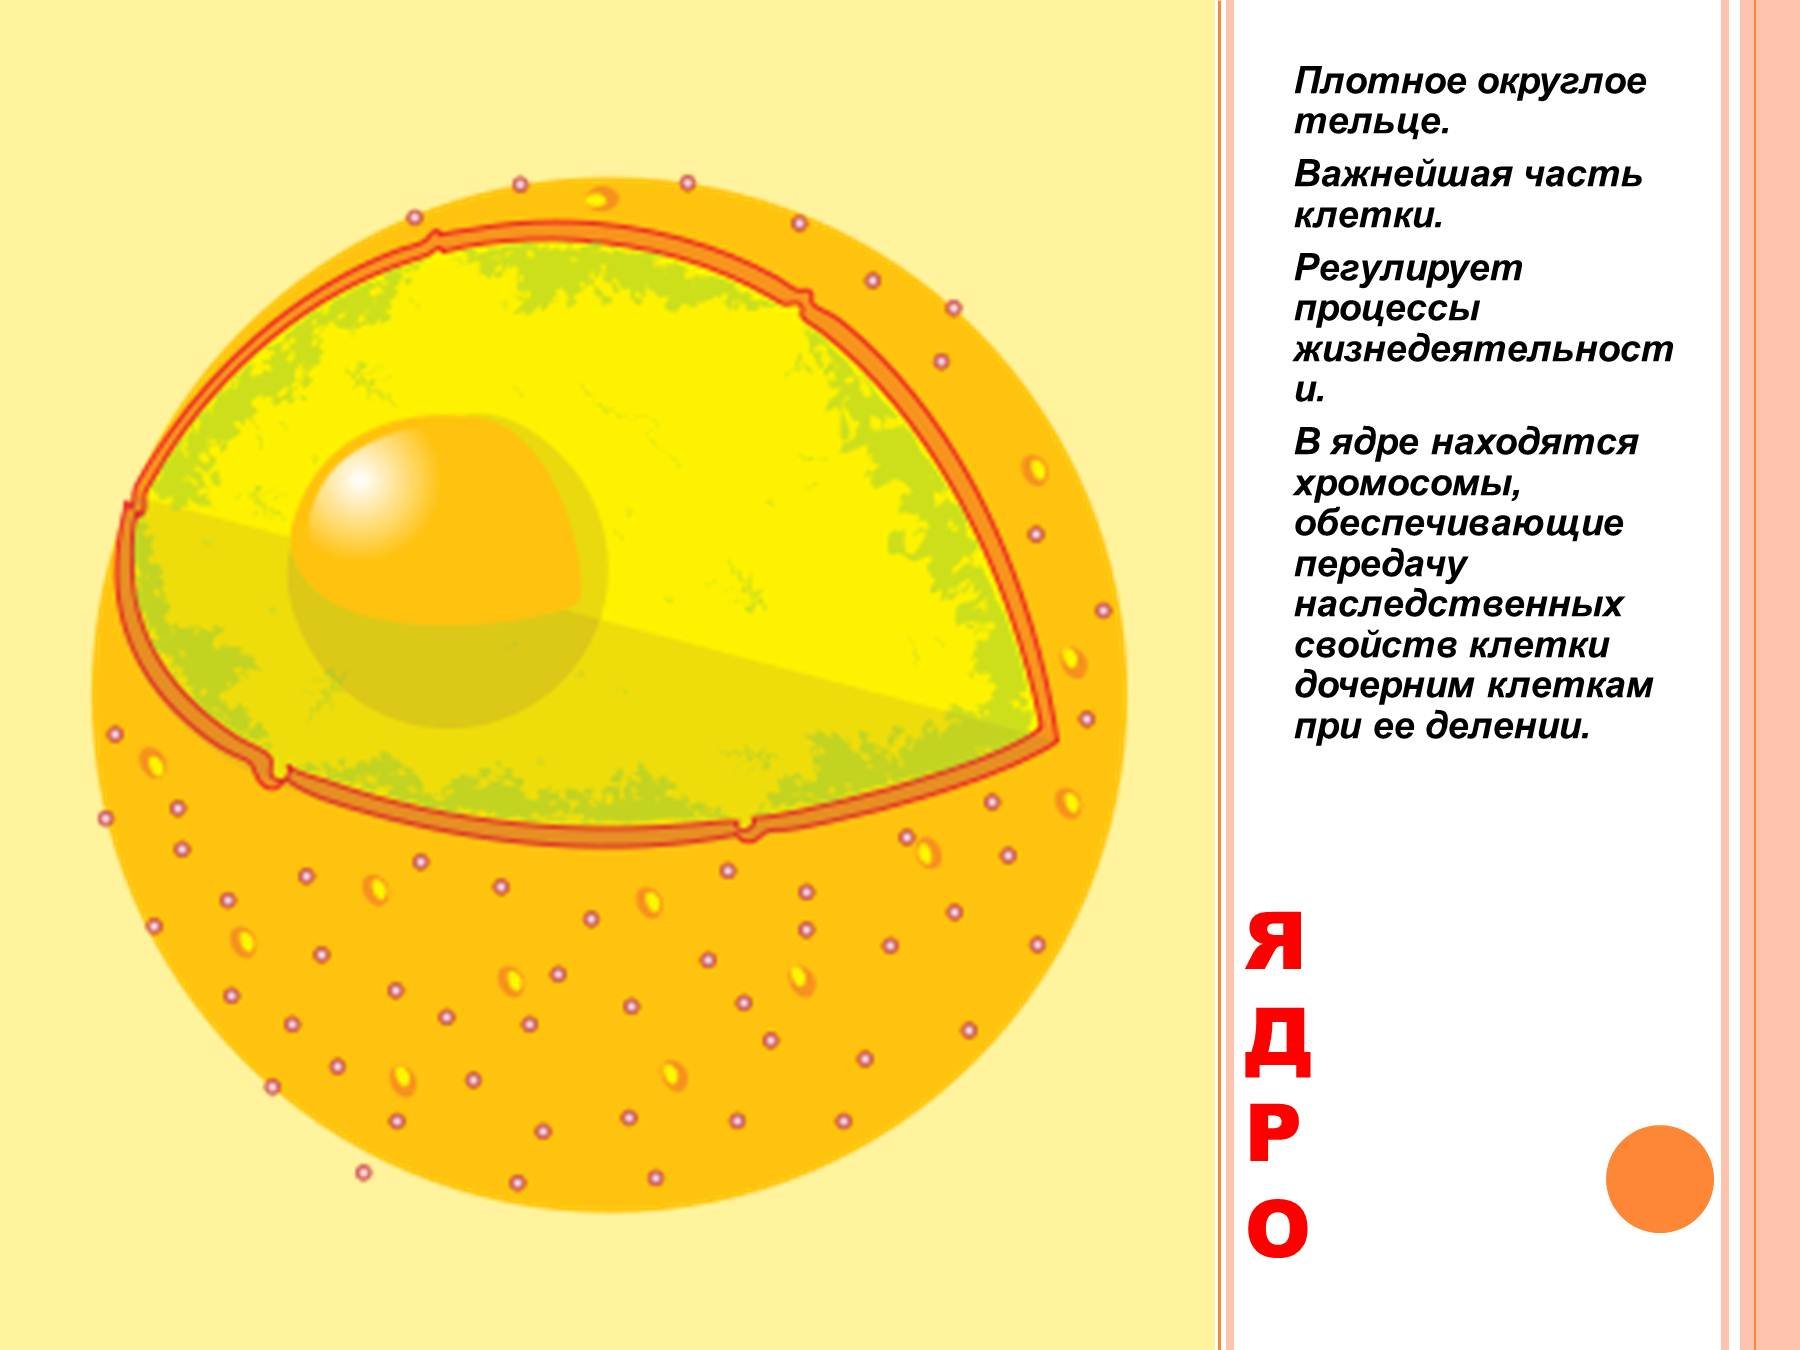 Ядро клетки схема. Ядро клетки рисунок схематично. Ядро клетки схематический рисунок. Строение ядра клетки рисунок. Строение ядра клетки без подписей.